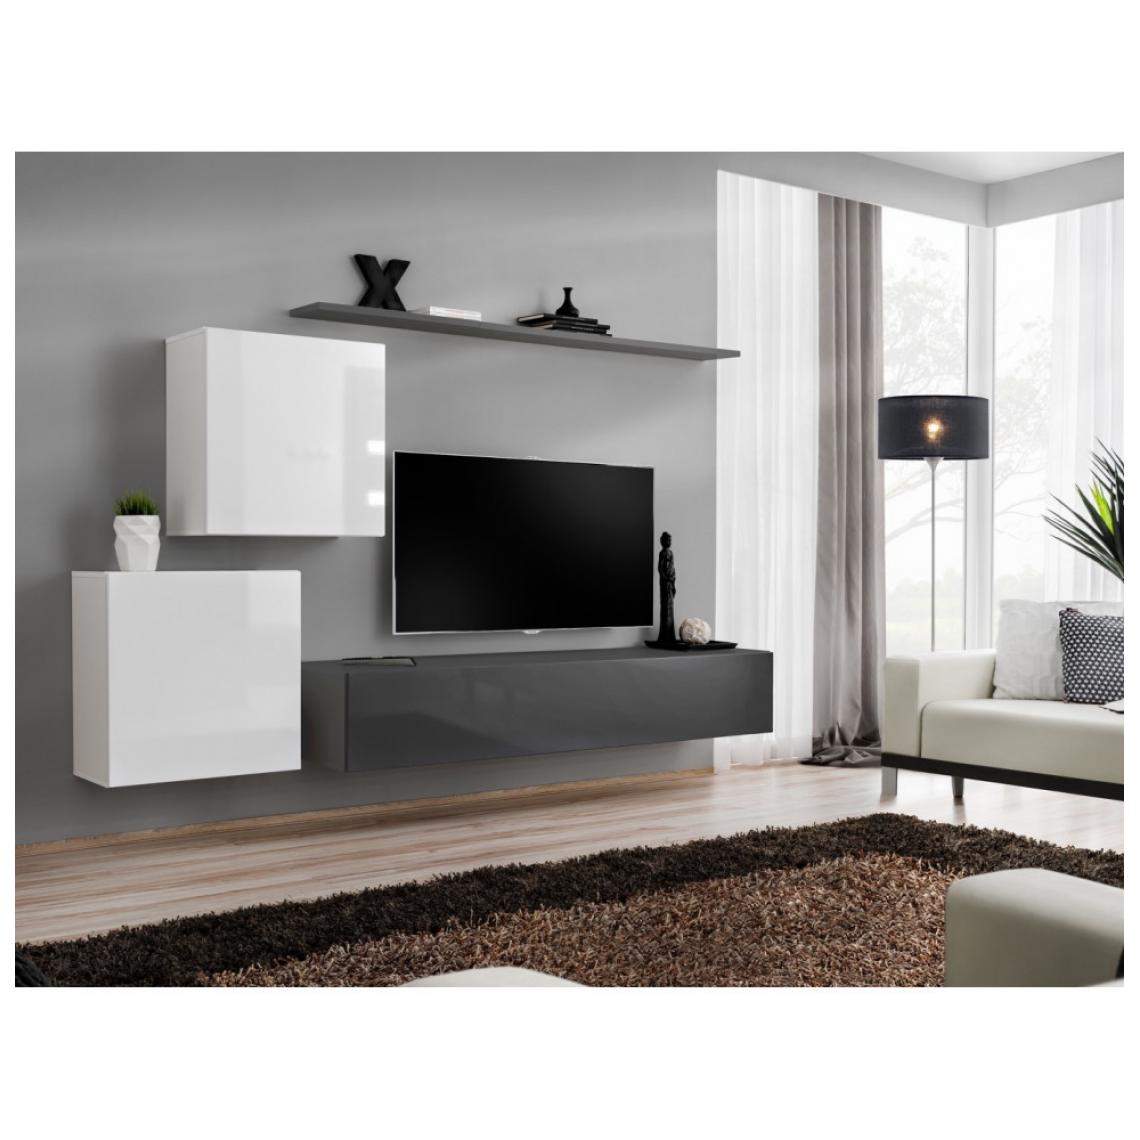 Ac-Deco - Ensemble mural - Switch V - 1 vitrine carrée - 1 banc TV - 1 étagère - Blanc et graphite - Modèle 1 - Meubles TV, Hi-Fi